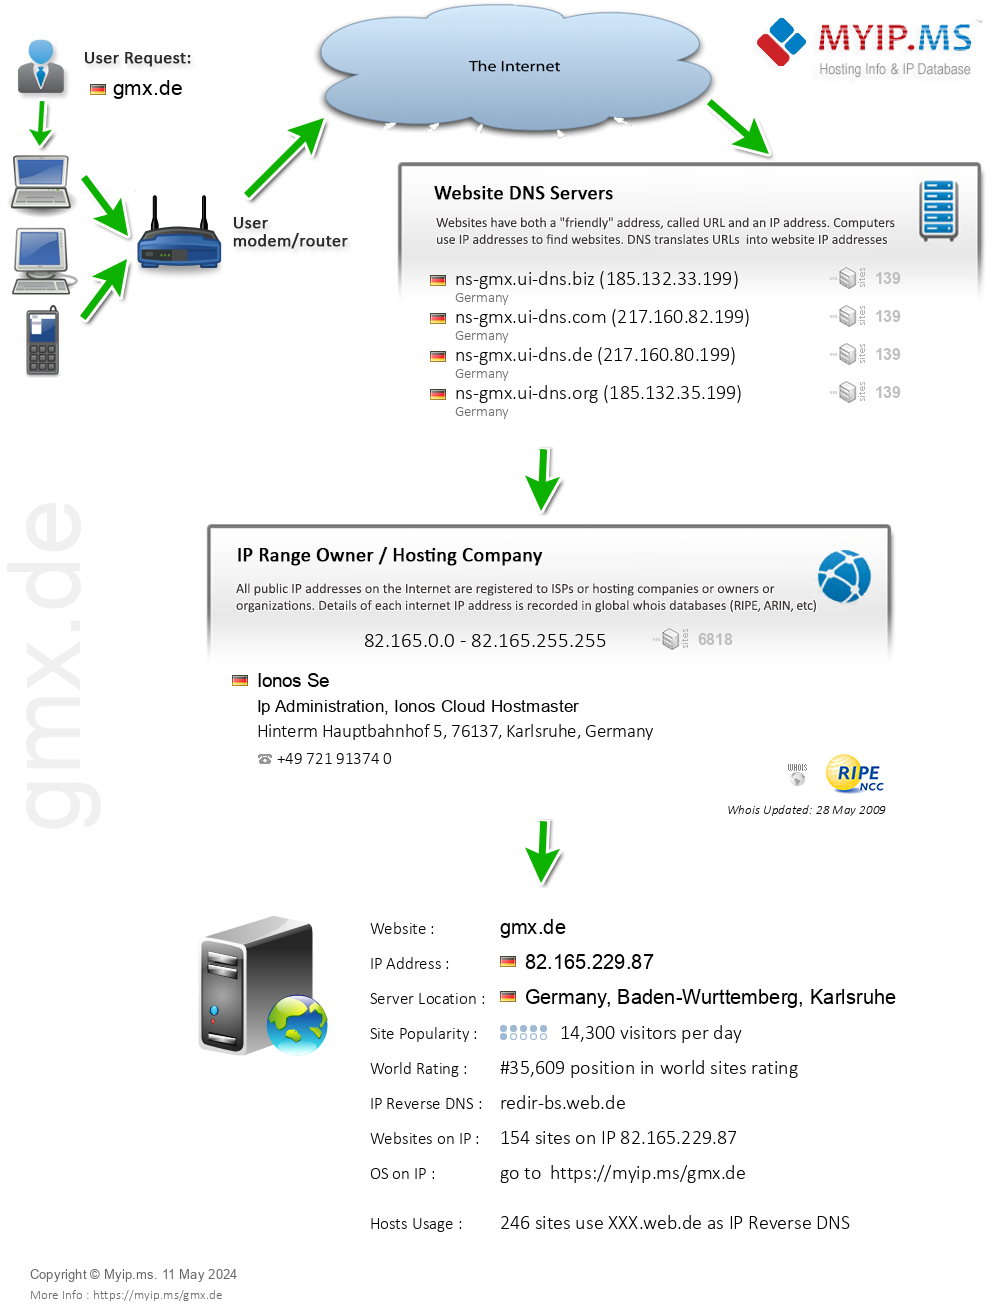 Gmx.de - Website Hosting Visual IP Diagram